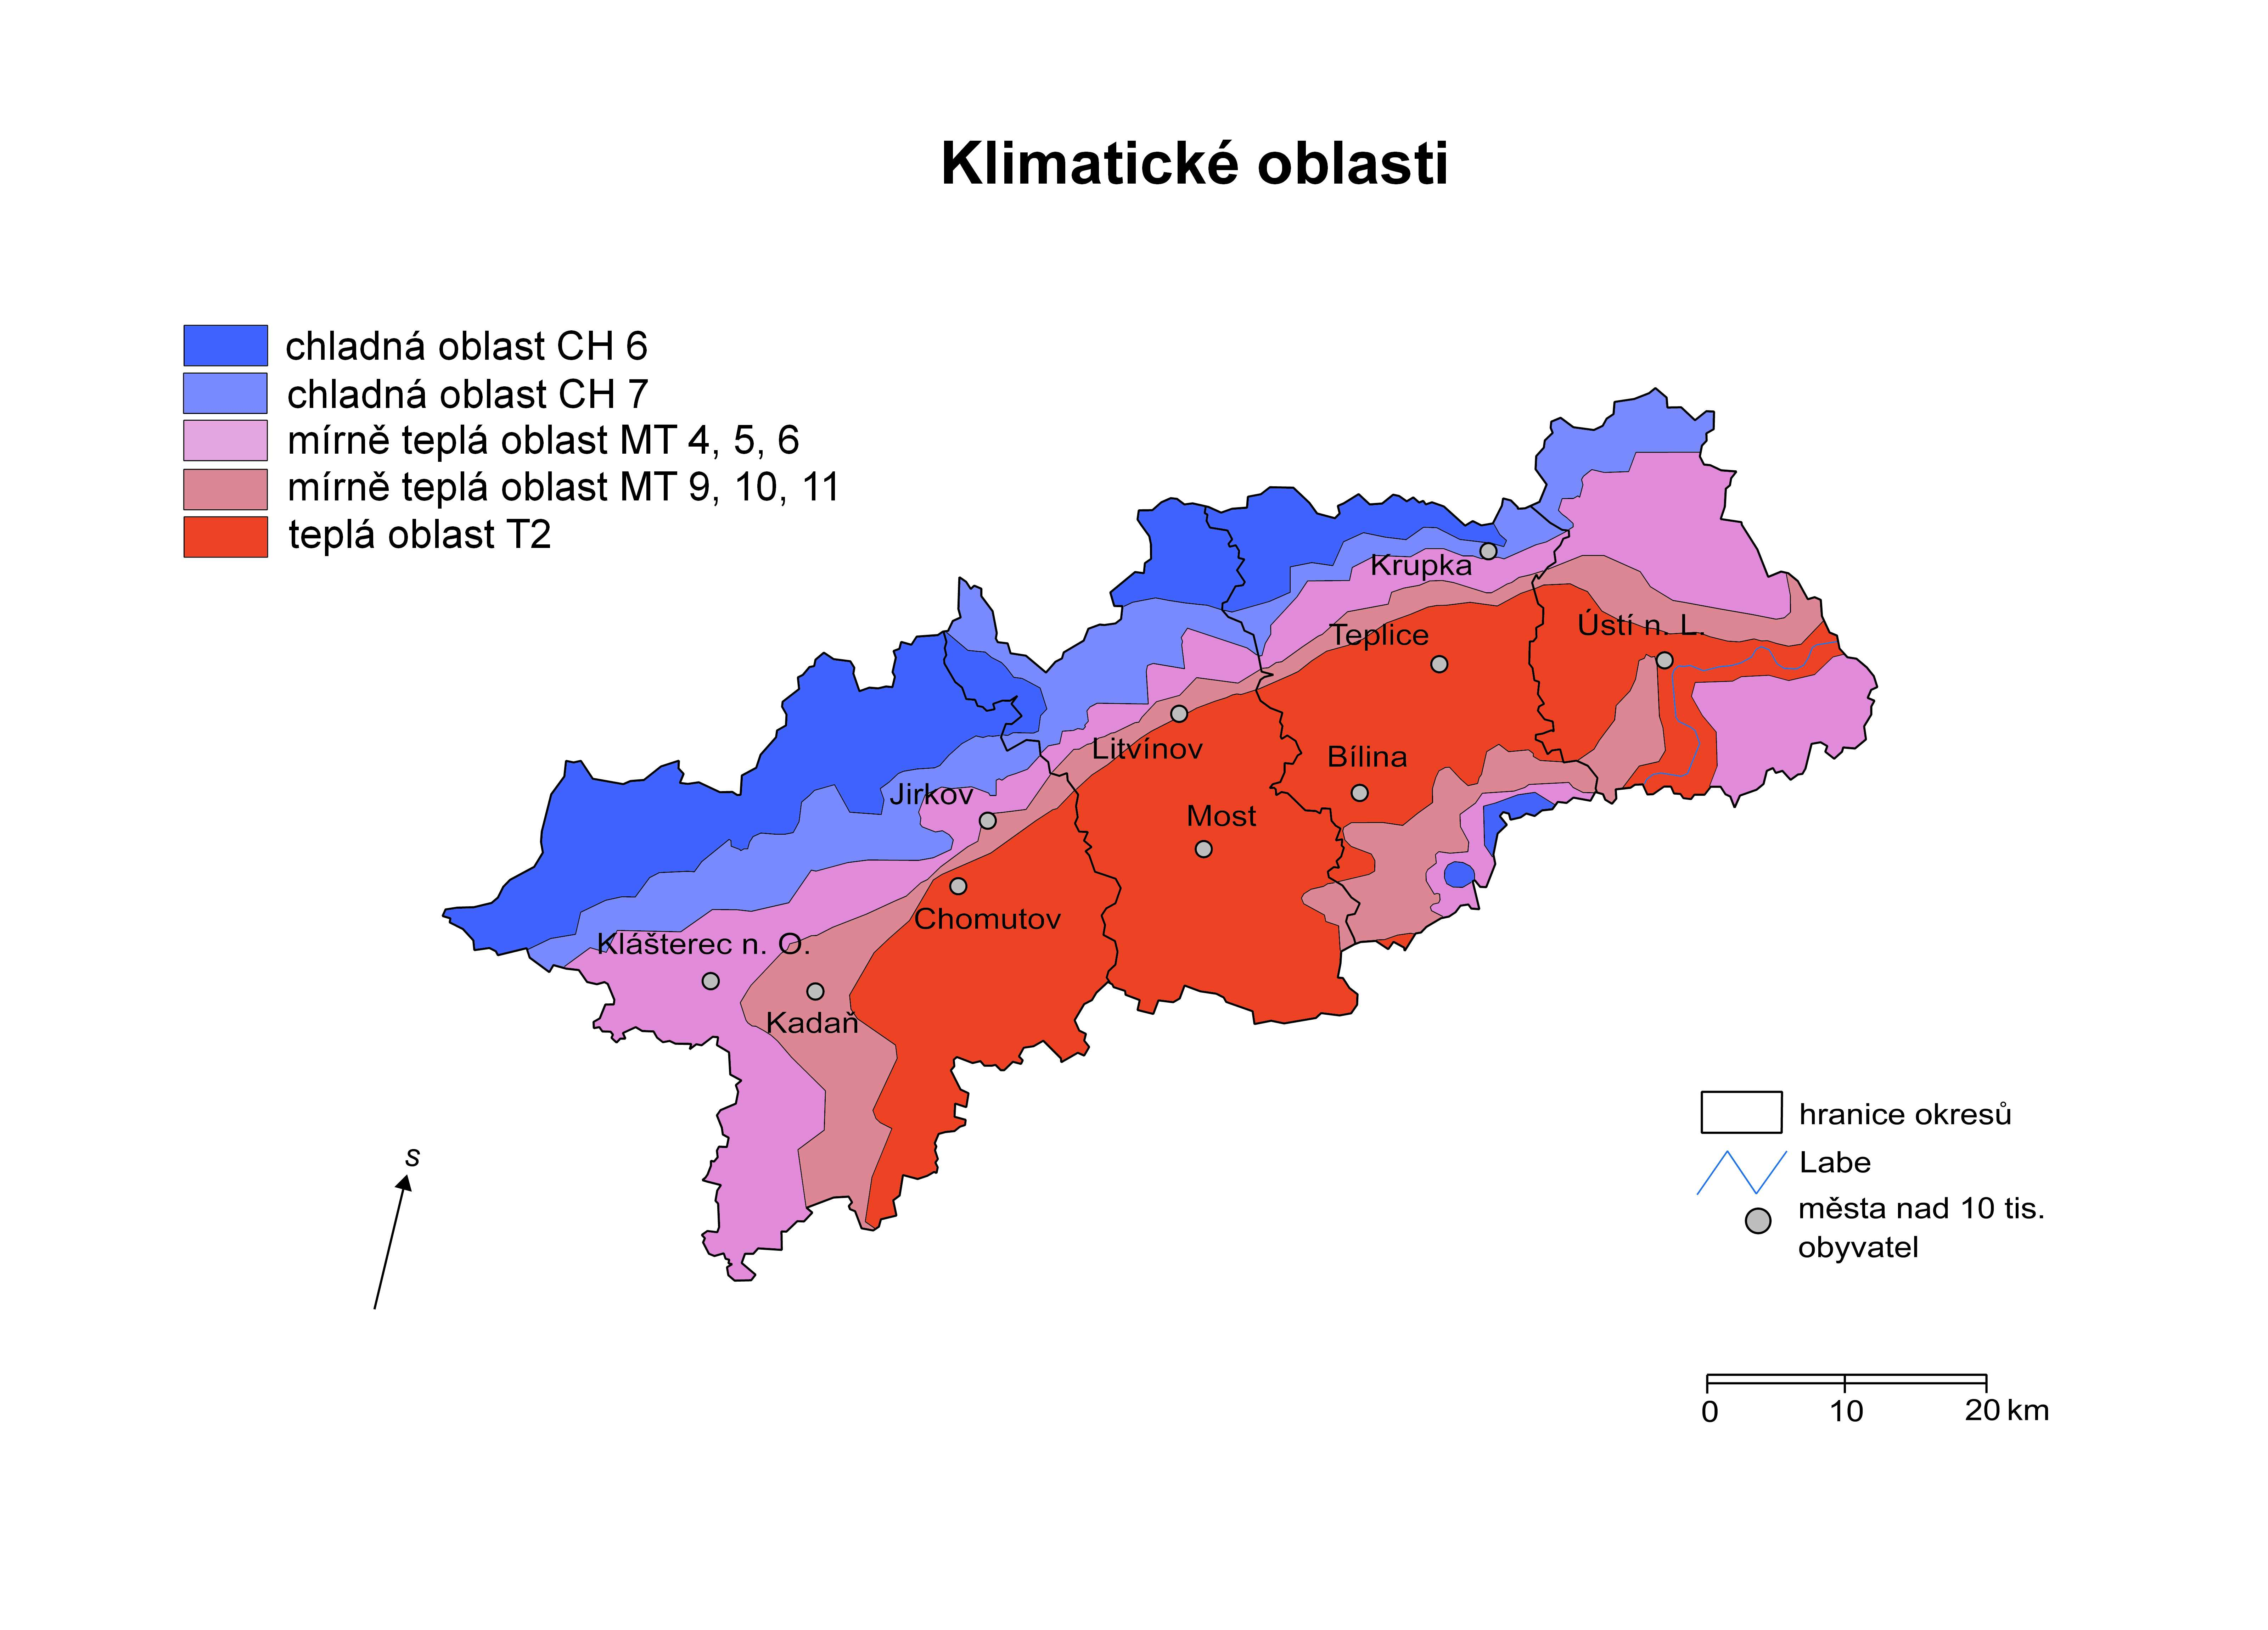 -teplá oblast T (v údolí Labe, Mostecké pánvi a v nejnižších částech Českého středohoří). Je nejvíce ve sledovaném období rozšířena.